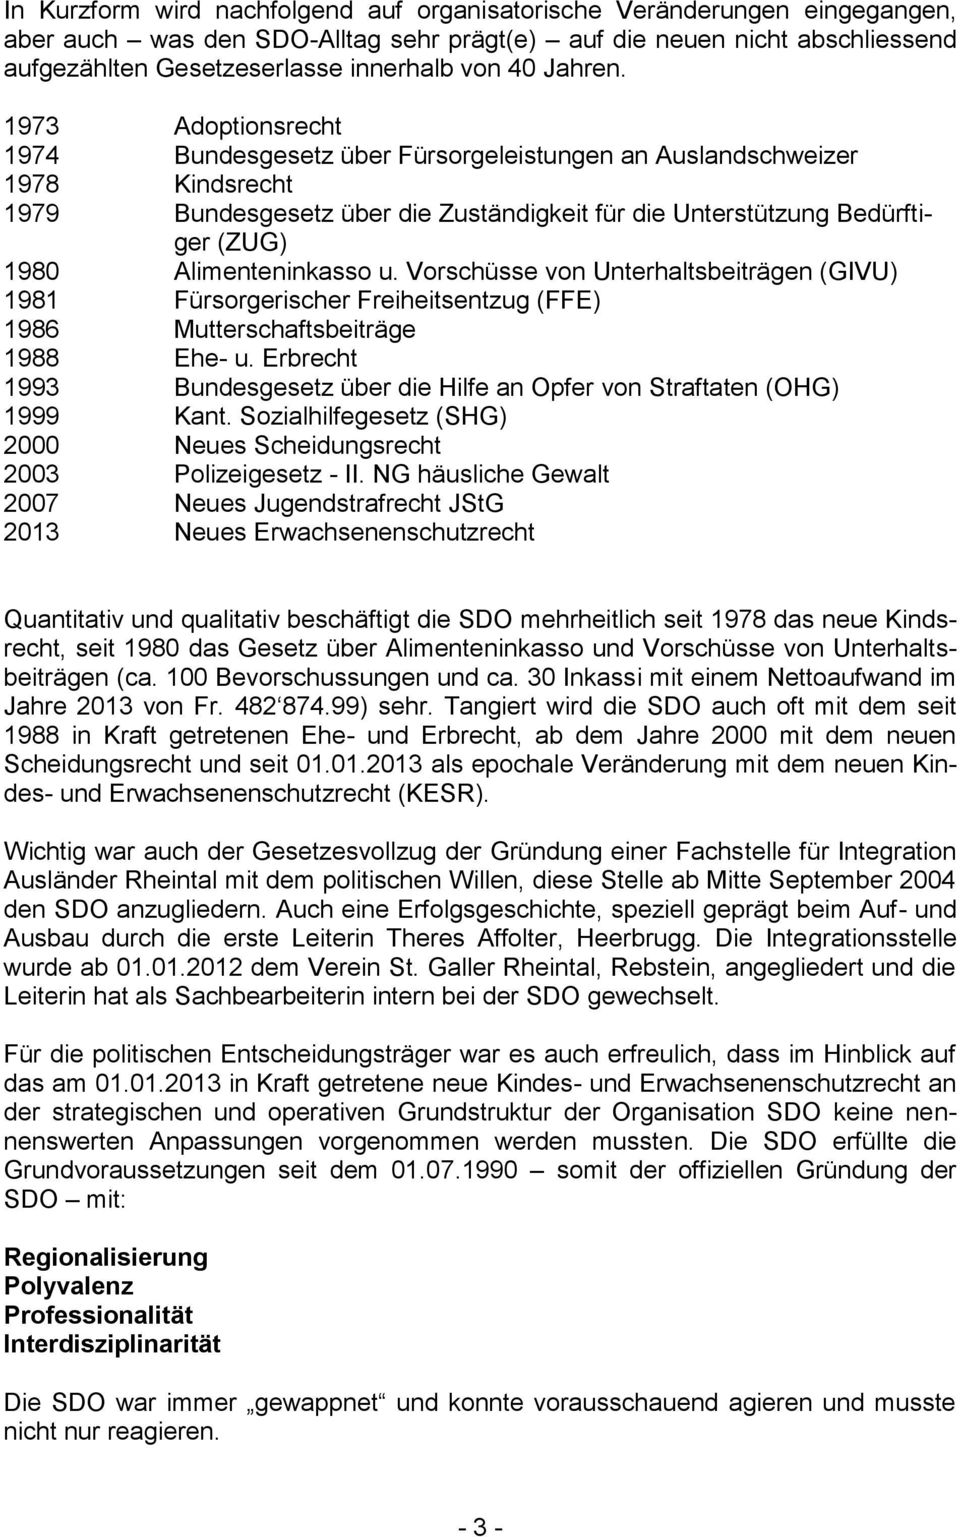 1973 Adoptionsrecht 1974 Bundesgesetz über Fürsorgeleistungen an Auslandschweizer 1978 Kindsrecht 1979 Bundesgesetz über die Zuständigkeit für die Unterstützung Bedürftiger (ZUG) 1980